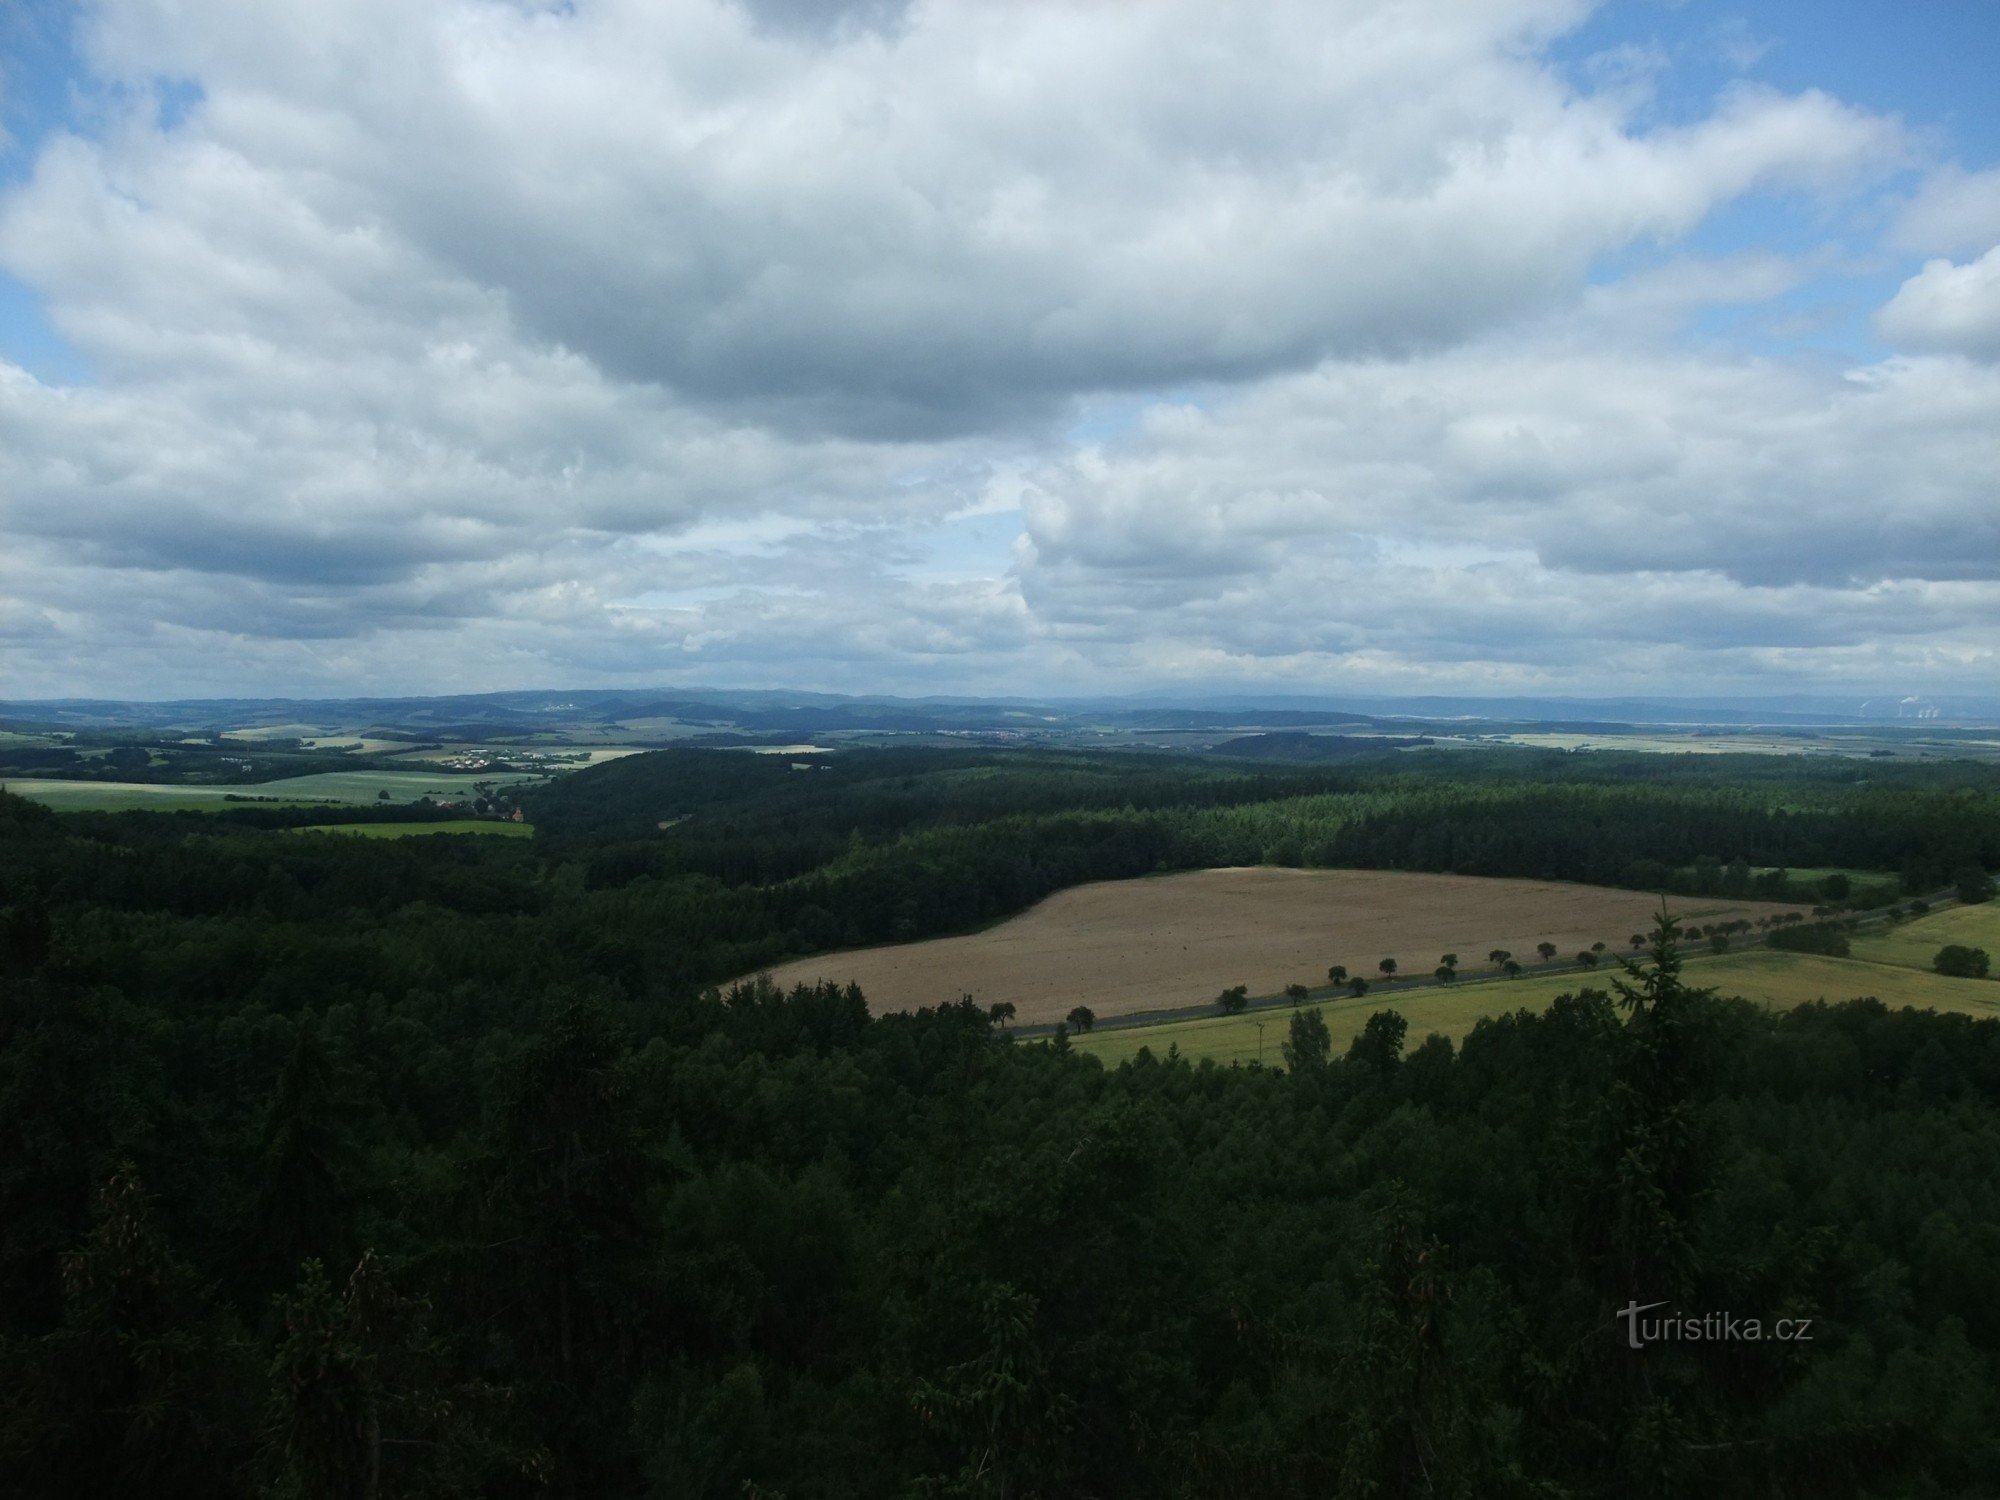 Utsikten från Tobiášová vrch